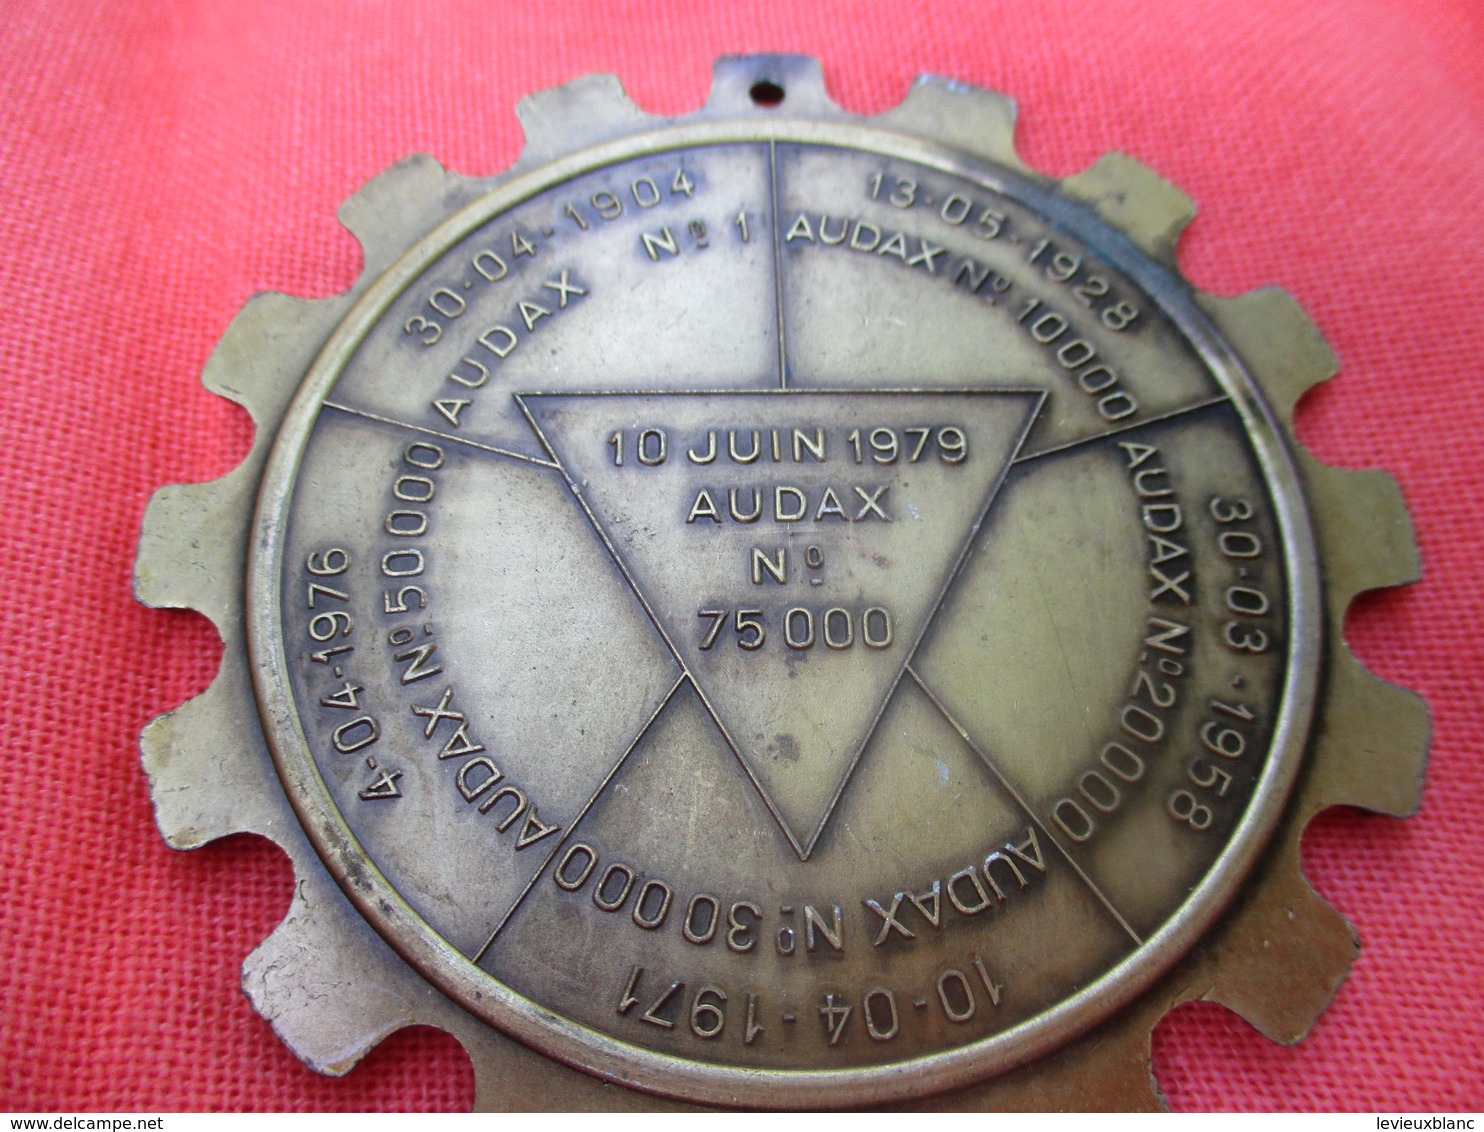 Médaille De Sport/Cyclisme/ EURAUDAX/ 200 KM/ Xéme Anniversaire/ BRIVE/Les Audax Français/1980    SPO288 - Radsport